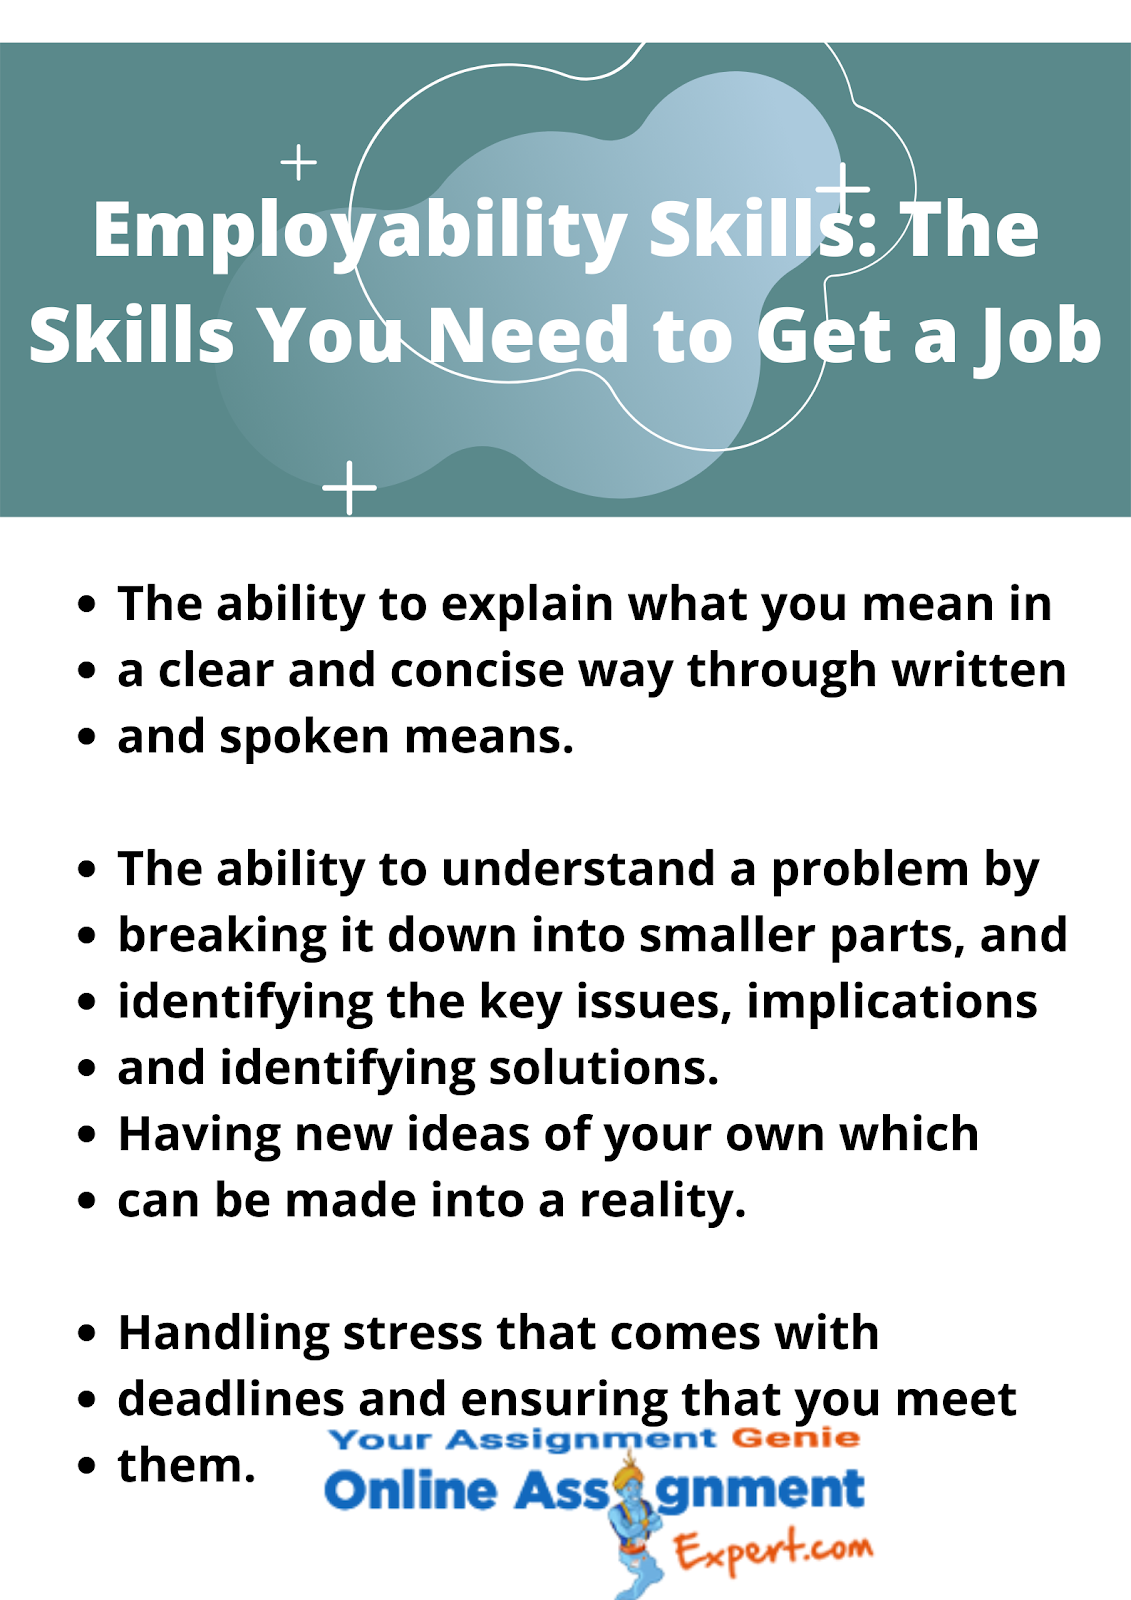 employbility skills